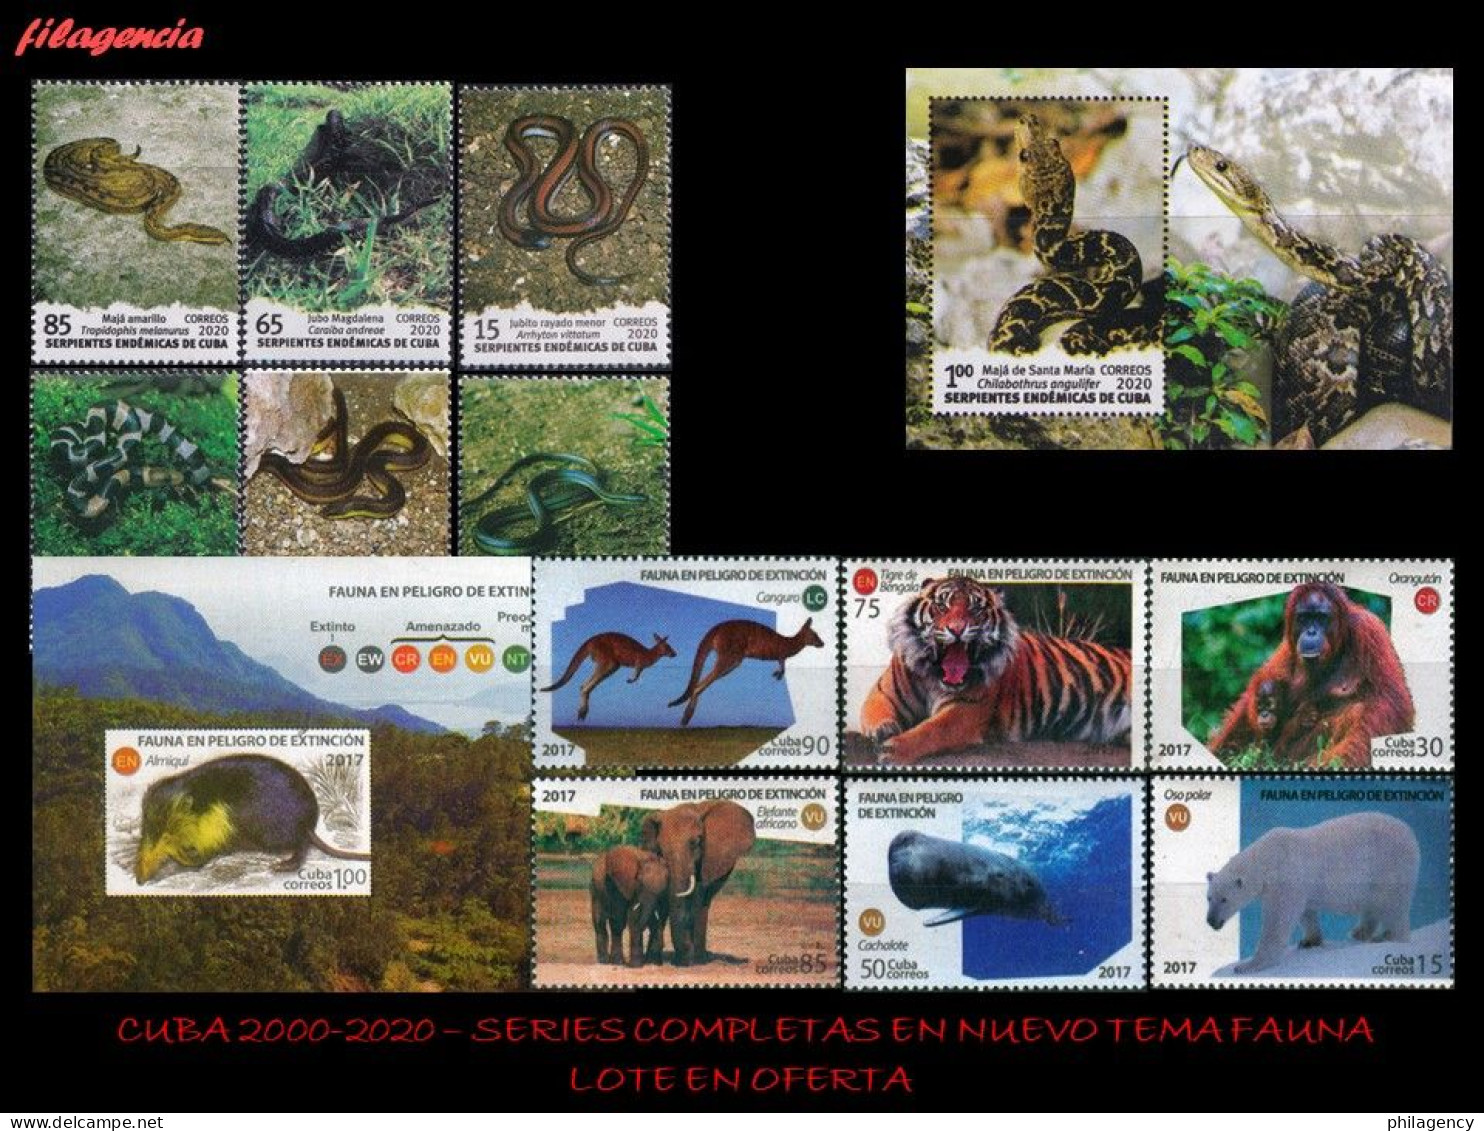 LOTES EN OFERTA. CUBA MINT. 2000-2020 LOTE DE 10 EMISIONES DIFERENTES & COMPLETAS. TEMÁTICA: FAUNA SALVAJE - Unused Stamps